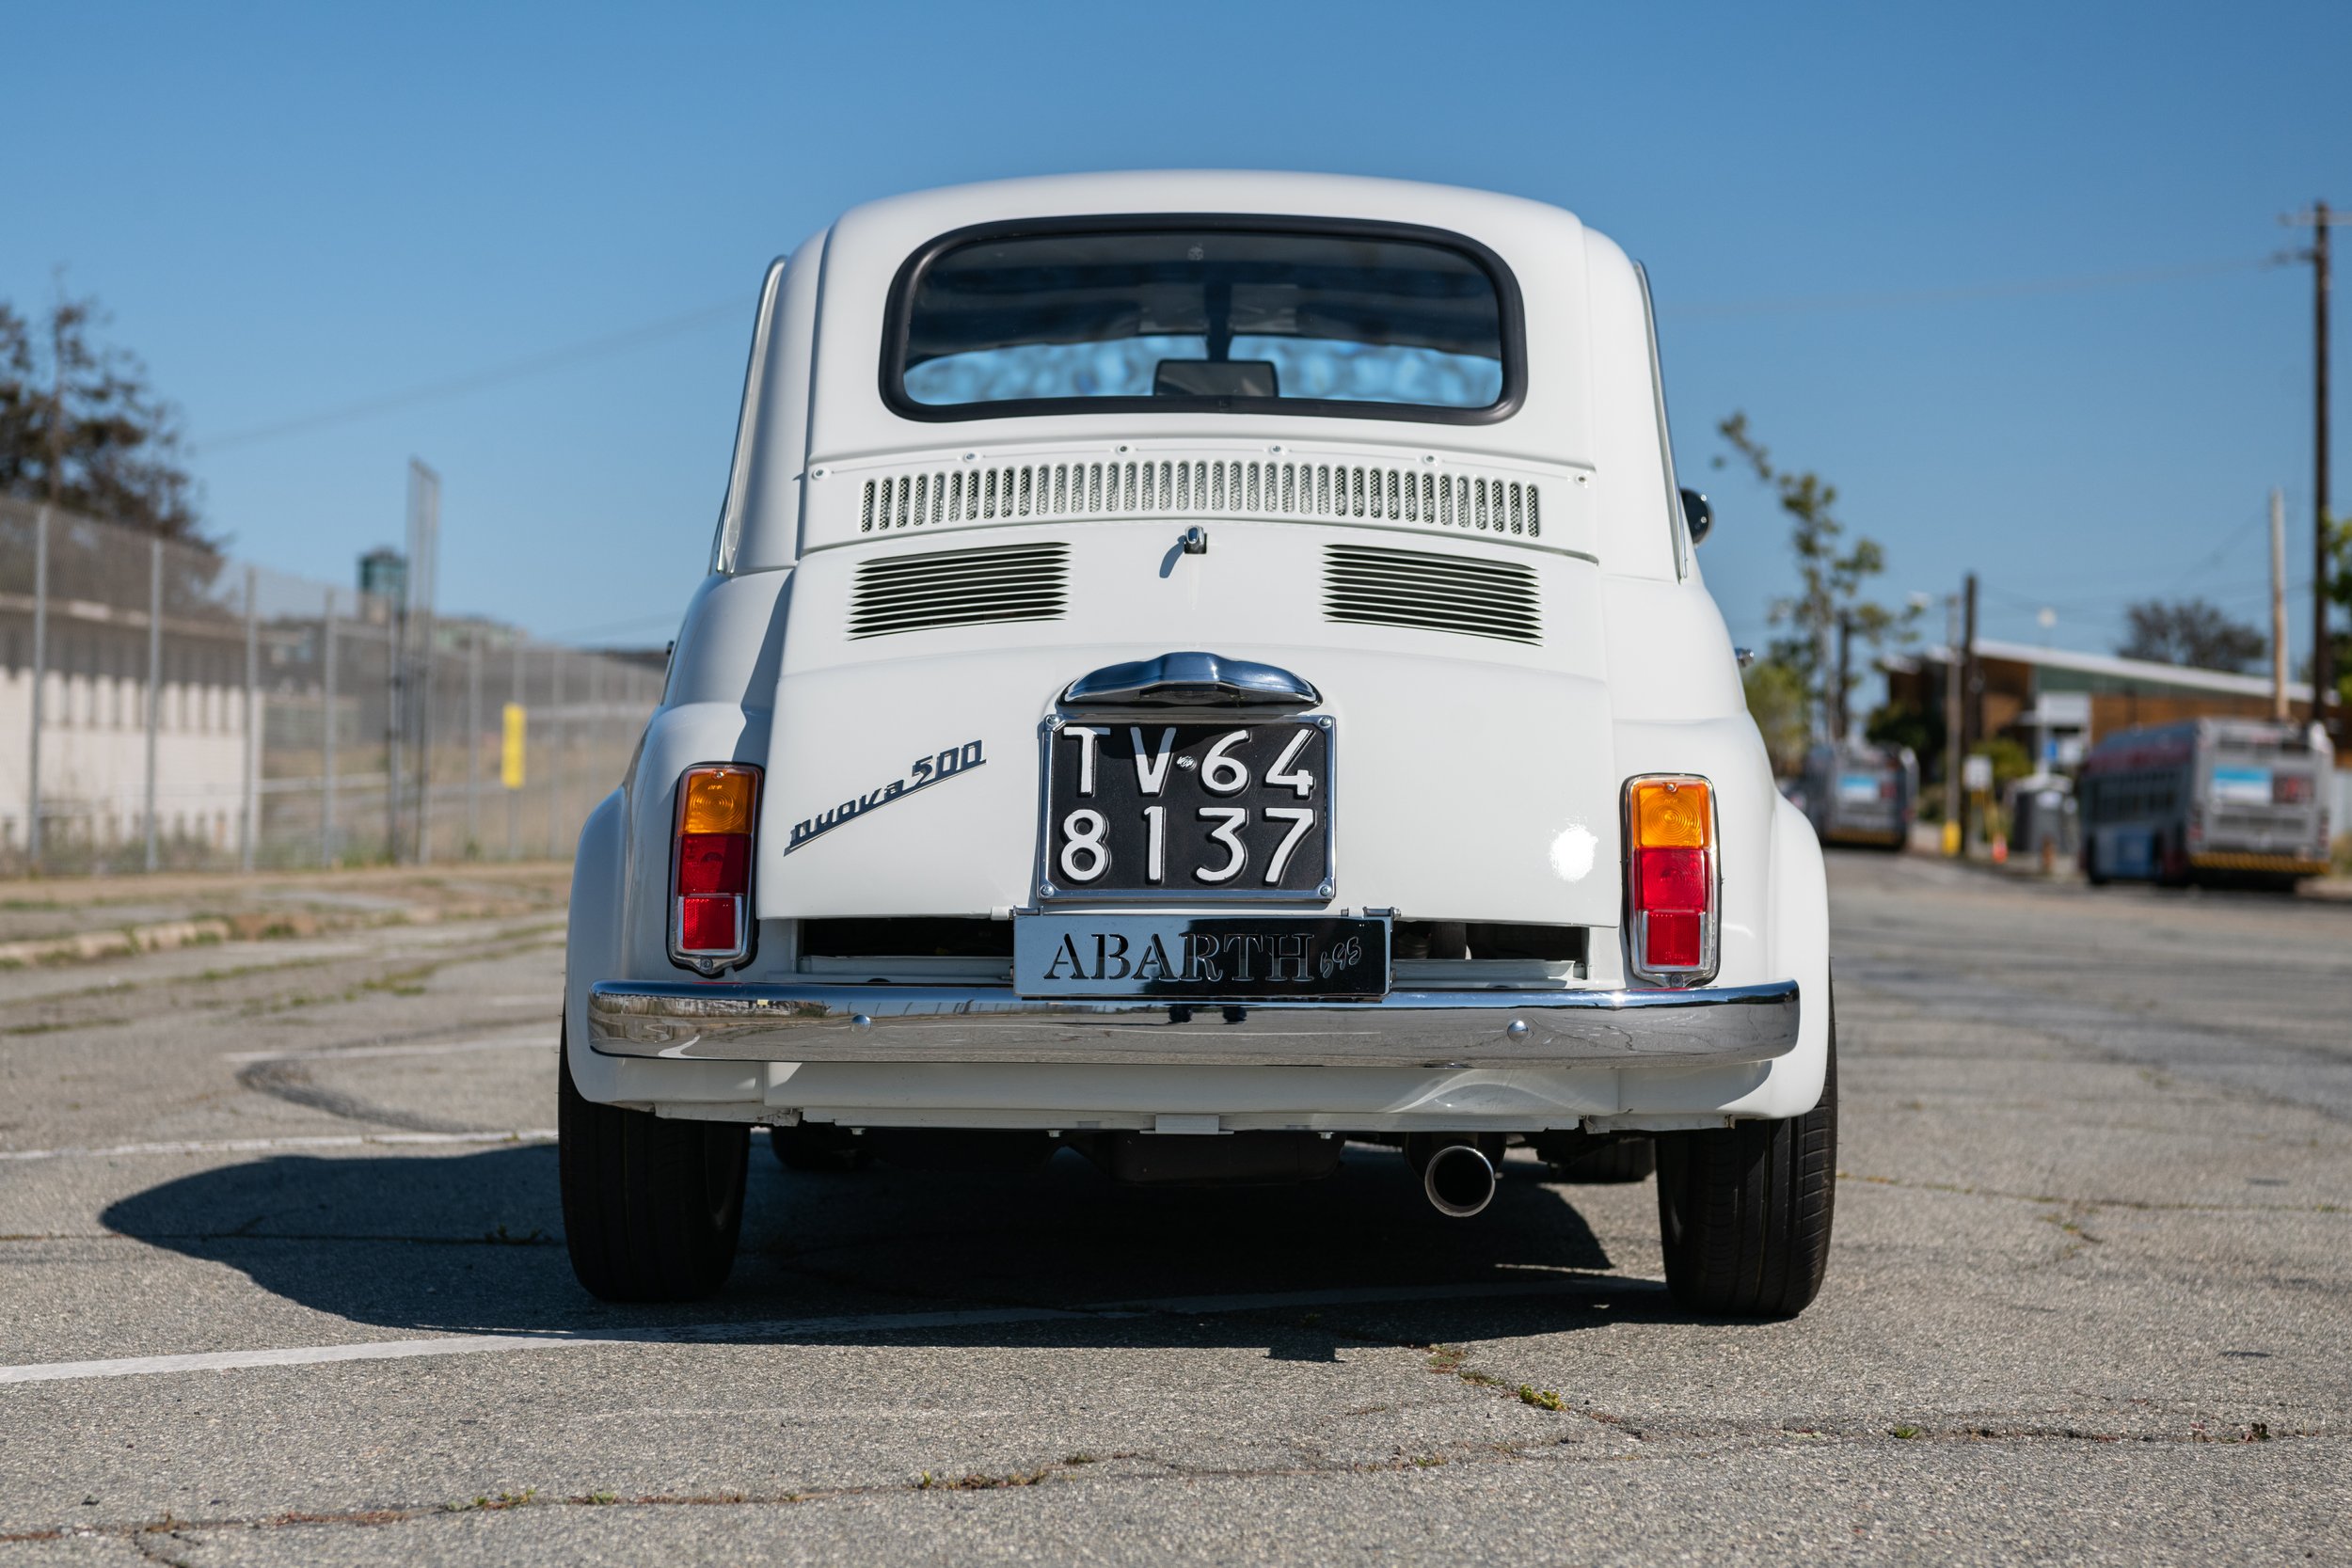 Bello Moto_1965 Fiat 500 - WHITE - (D234)_Sharplite_FULL RES-86.jpg